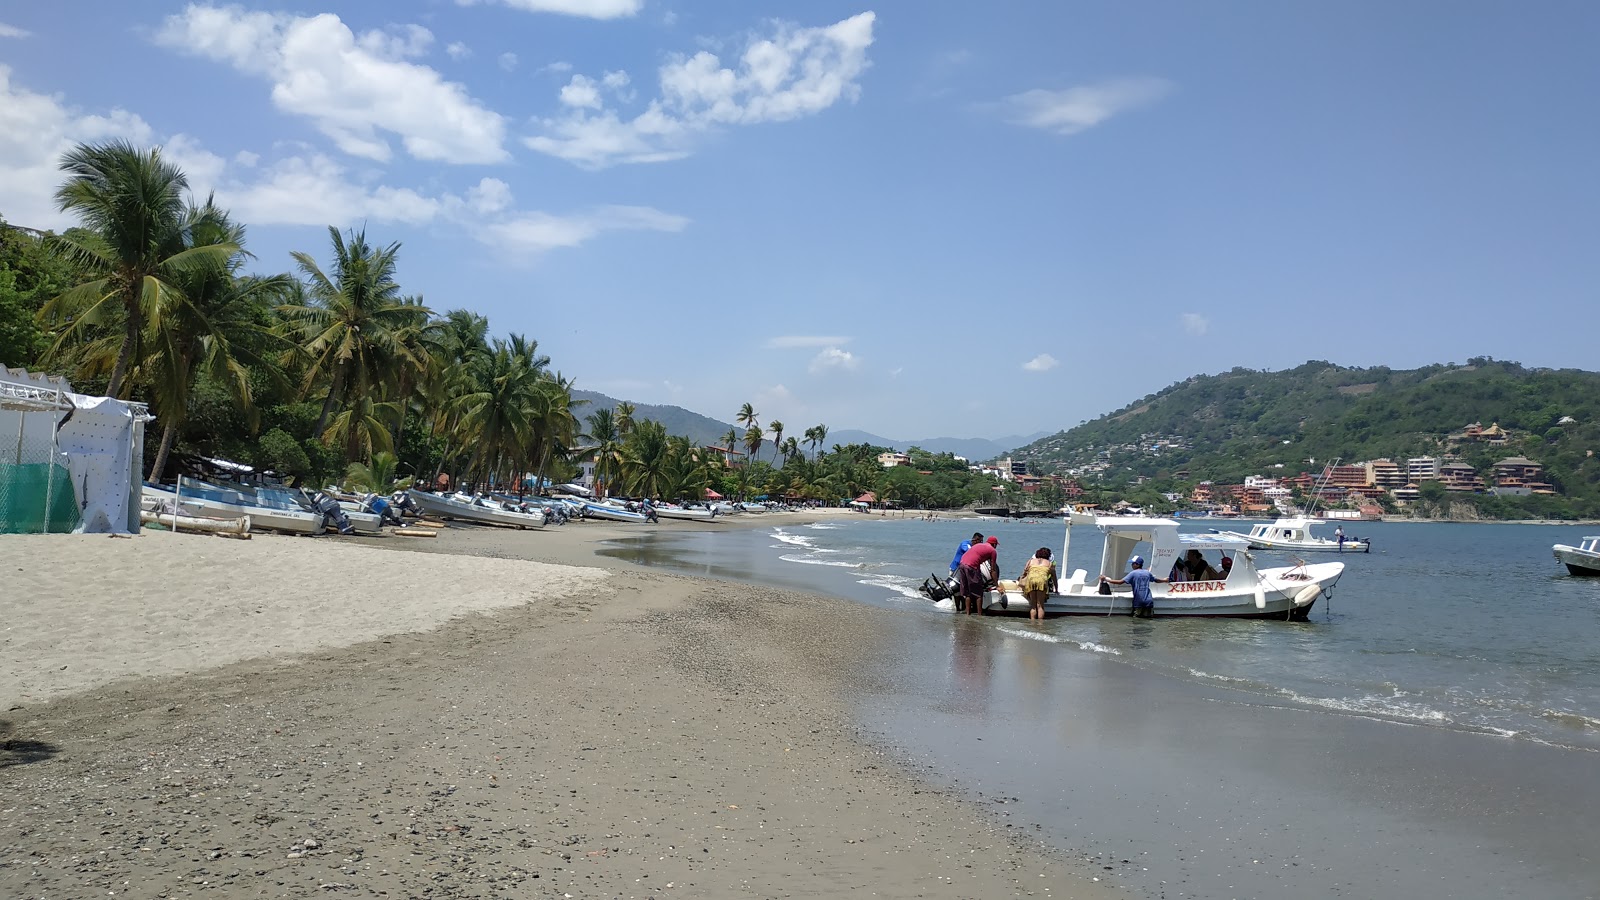 Fotografie cu Zihuatanejo beach cu plajă spațioasă